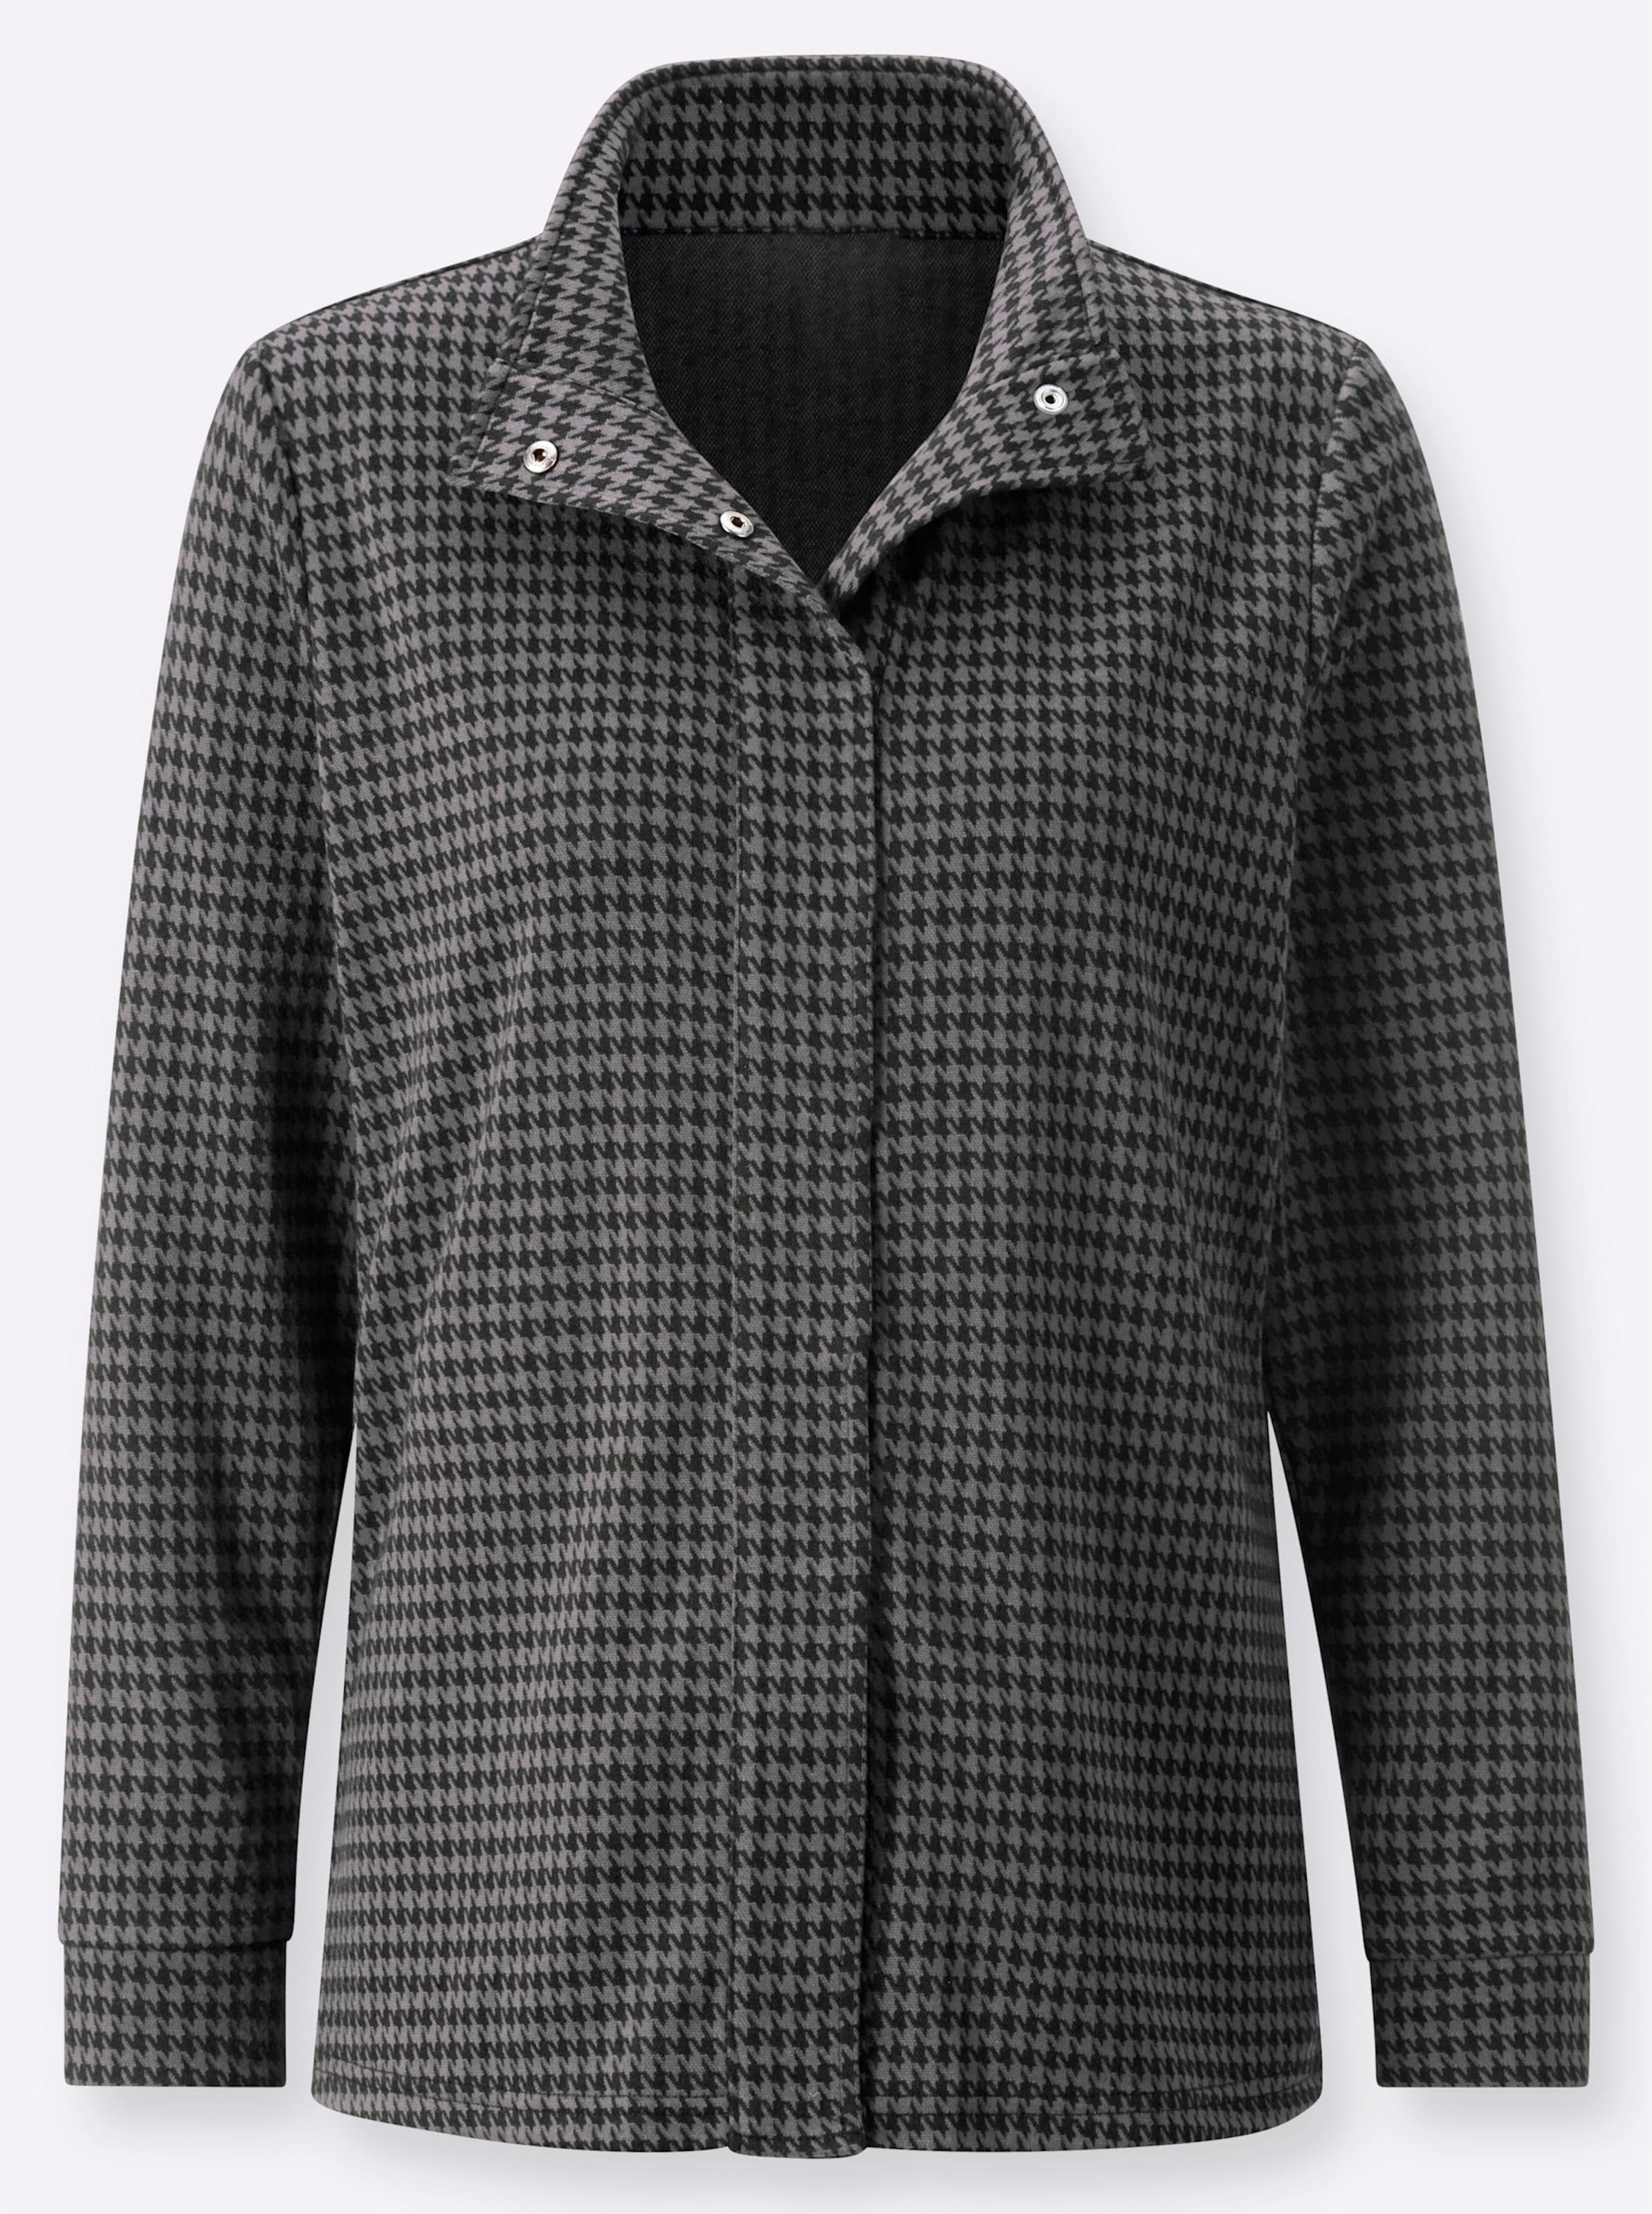 Witt Weiden Damen Jersey Bluse grau schwarz gemustert  - Onlineshop Witt Weiden